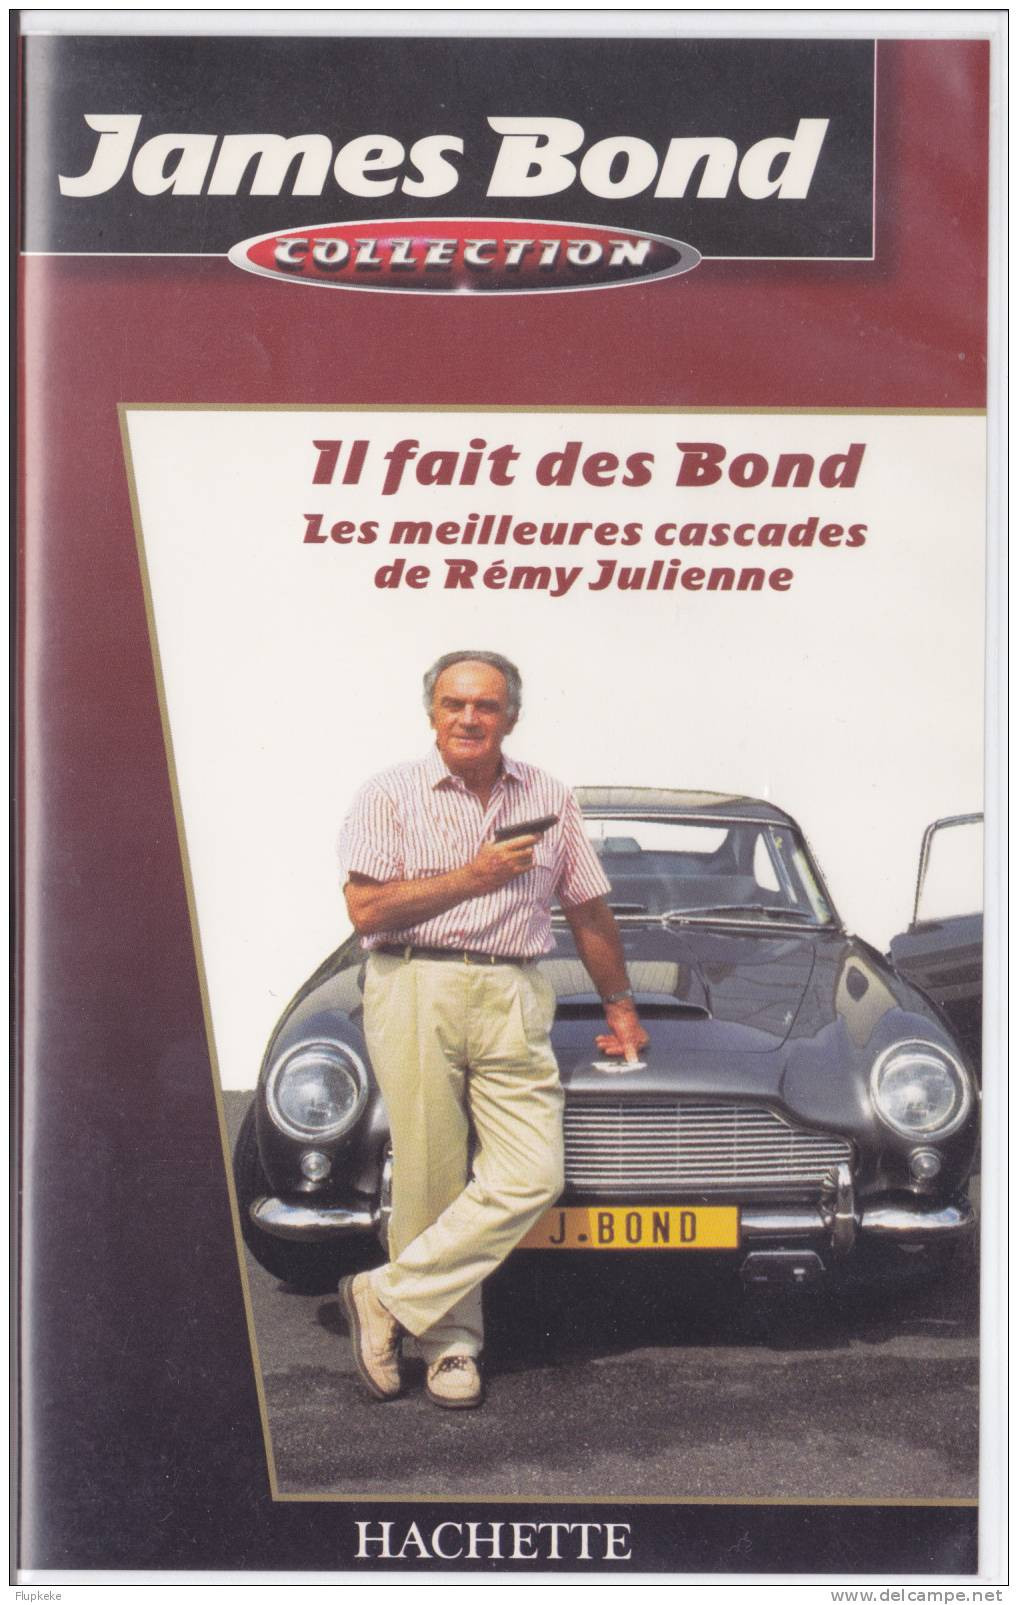 James Bond Collection Hachette 2 VHS Le Monde De James Bond + Les Meilleures Cascades De Rémy Julienne - Documentaire